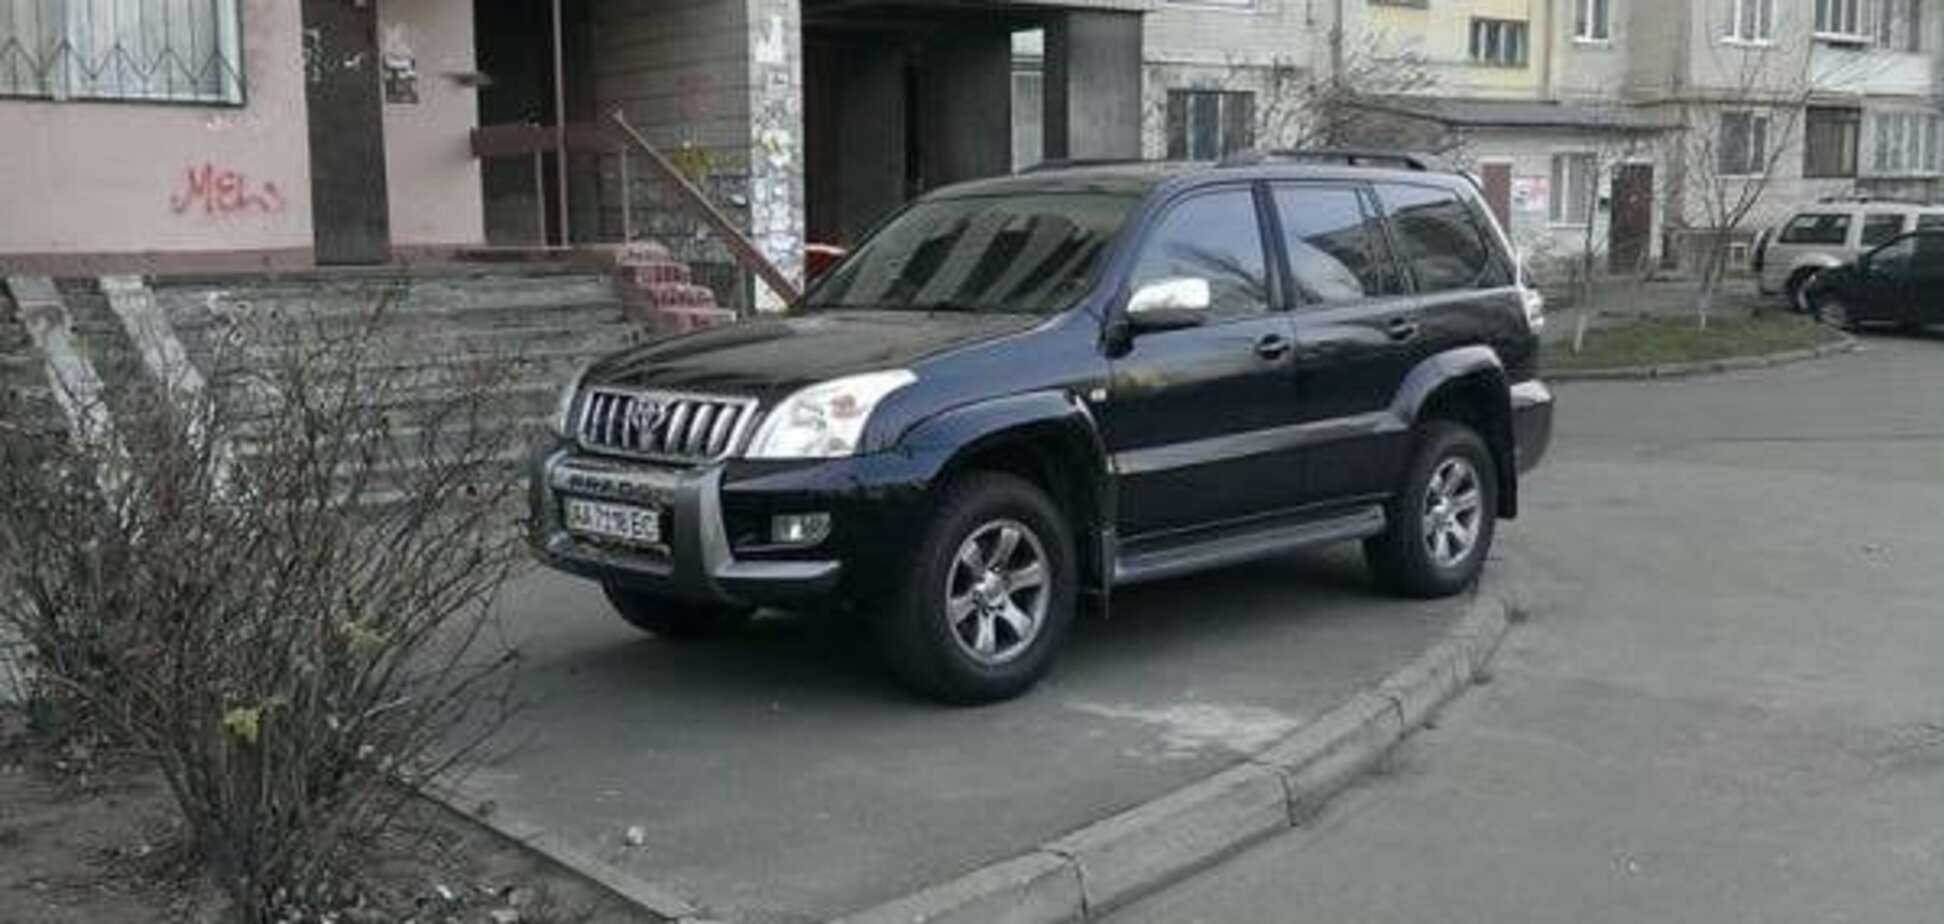 Герой парковки: в Киеве горе-водитель остановился в шаге от дома